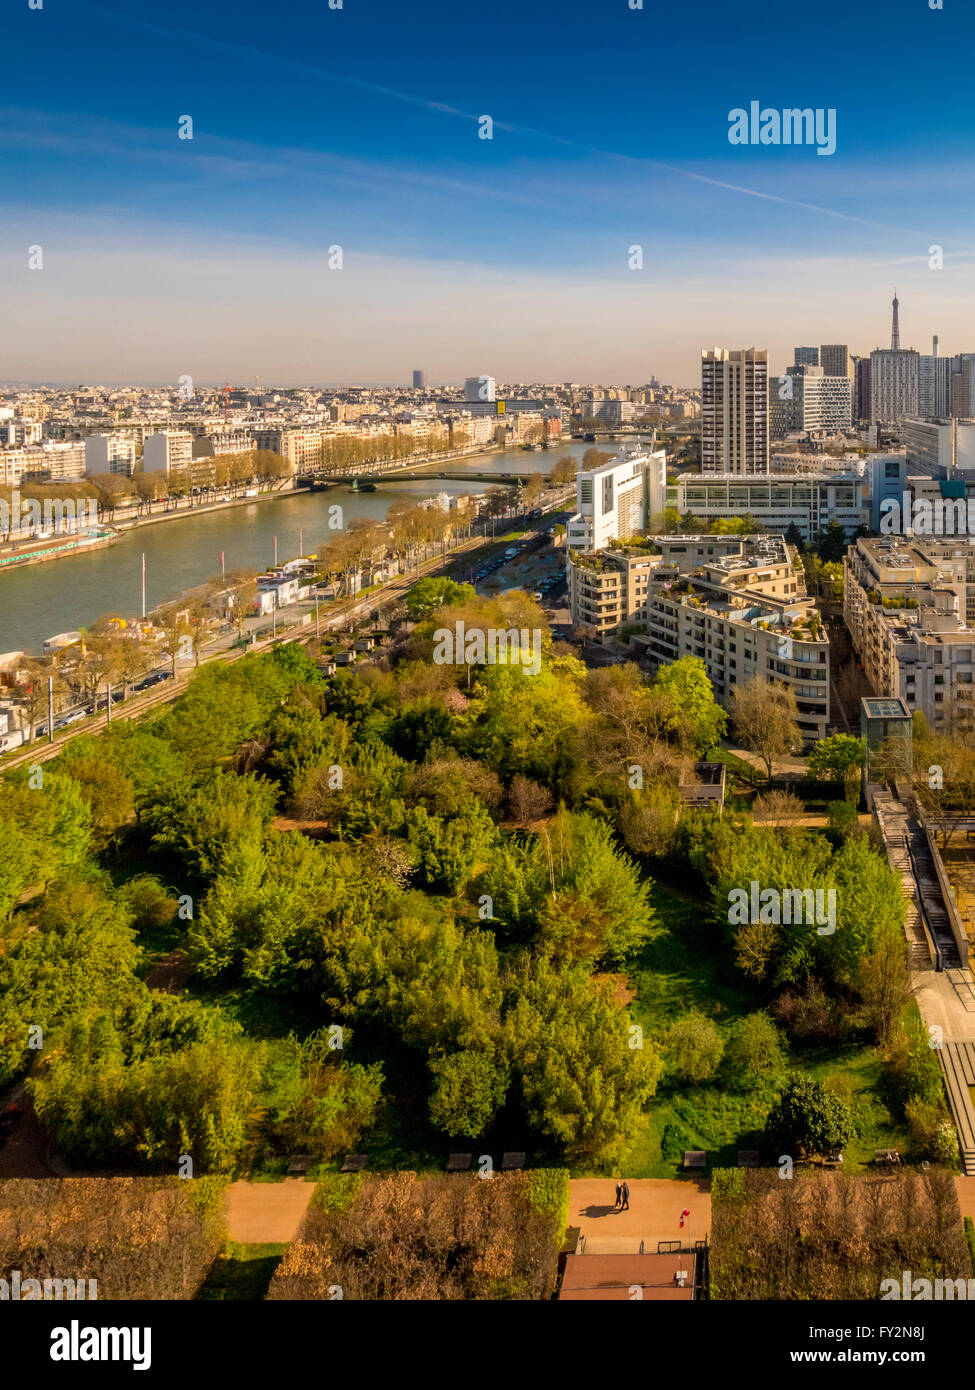 Vue aérienne de la Seine avec la Tour Eiffel en distance, Paris, France. Banque D'Images